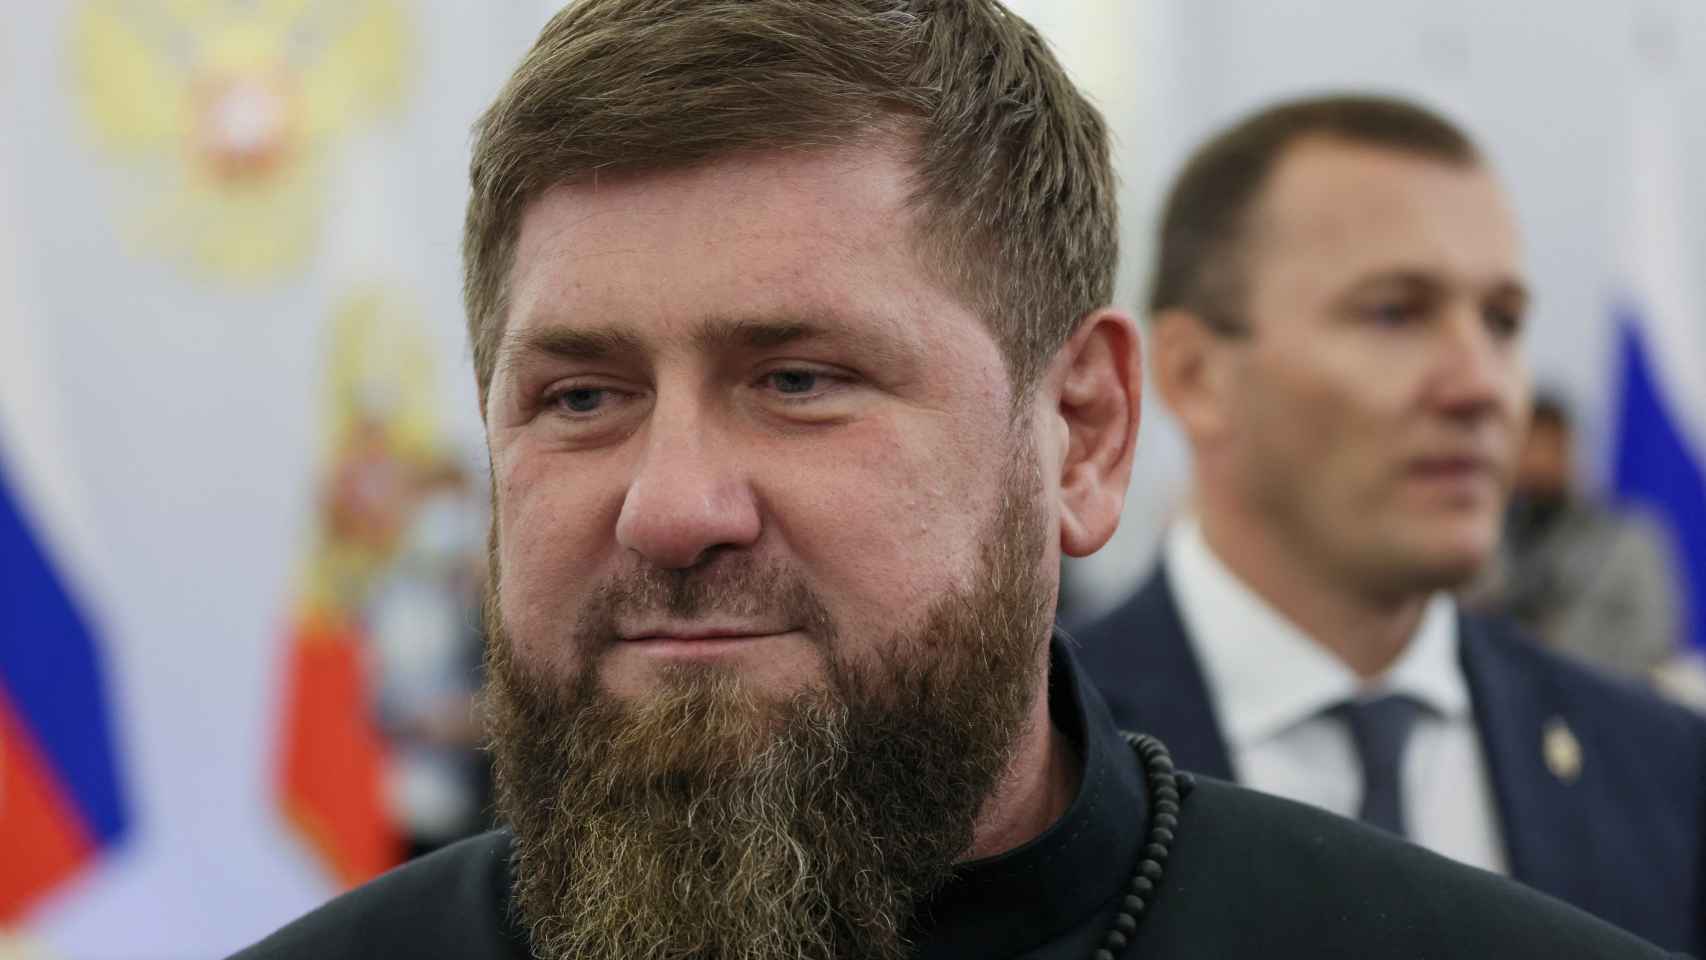 El líder checheno Ramzan Kadyrov en una imagen del pasado 30 de septiembre.